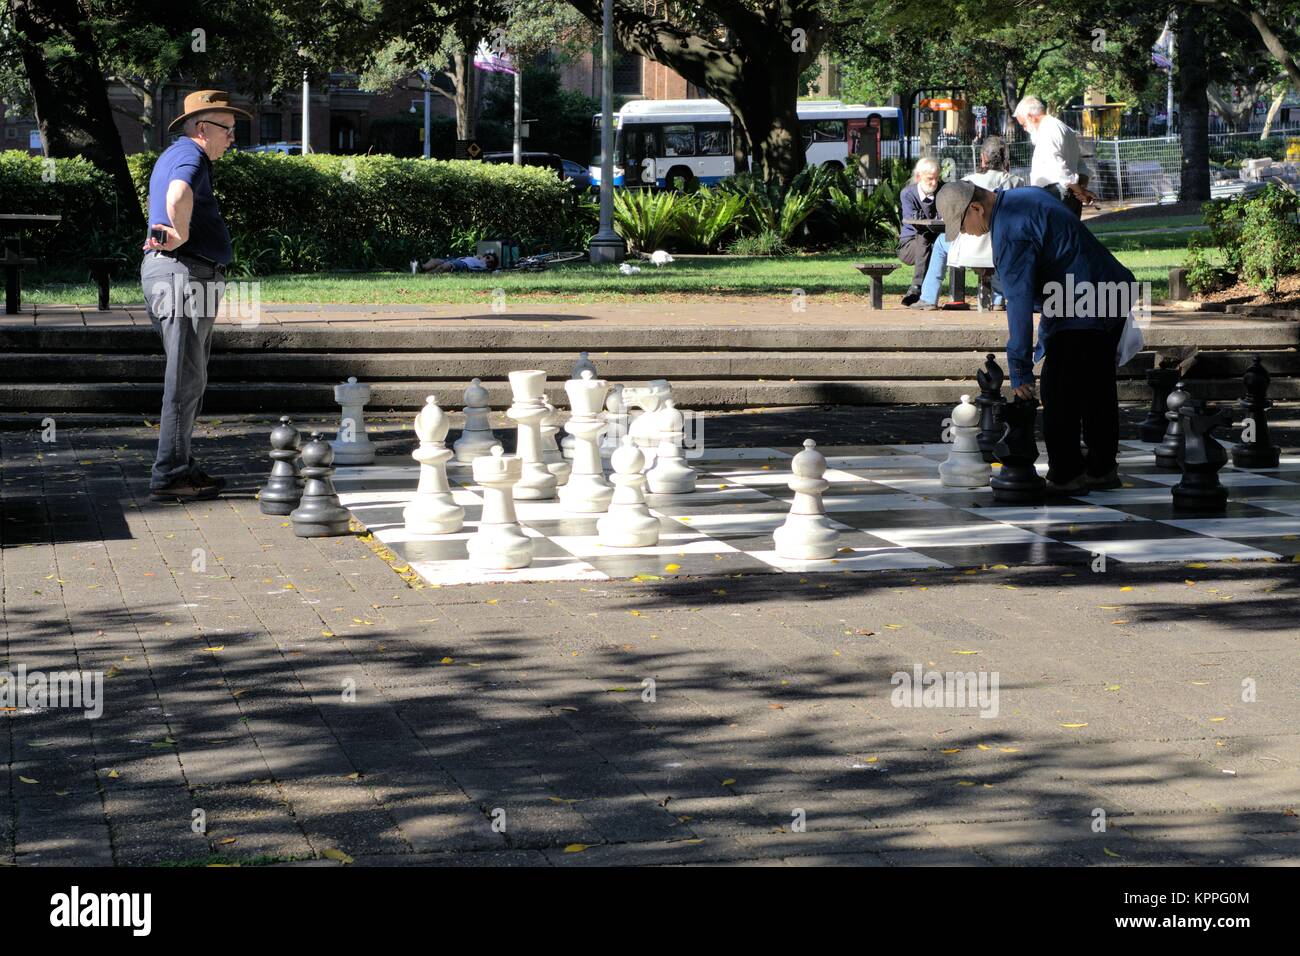 Im freien Sydney Australien tagsüber Bild. Männer spielen Schach in Hyde Park Sydney Australien. Stockfoto